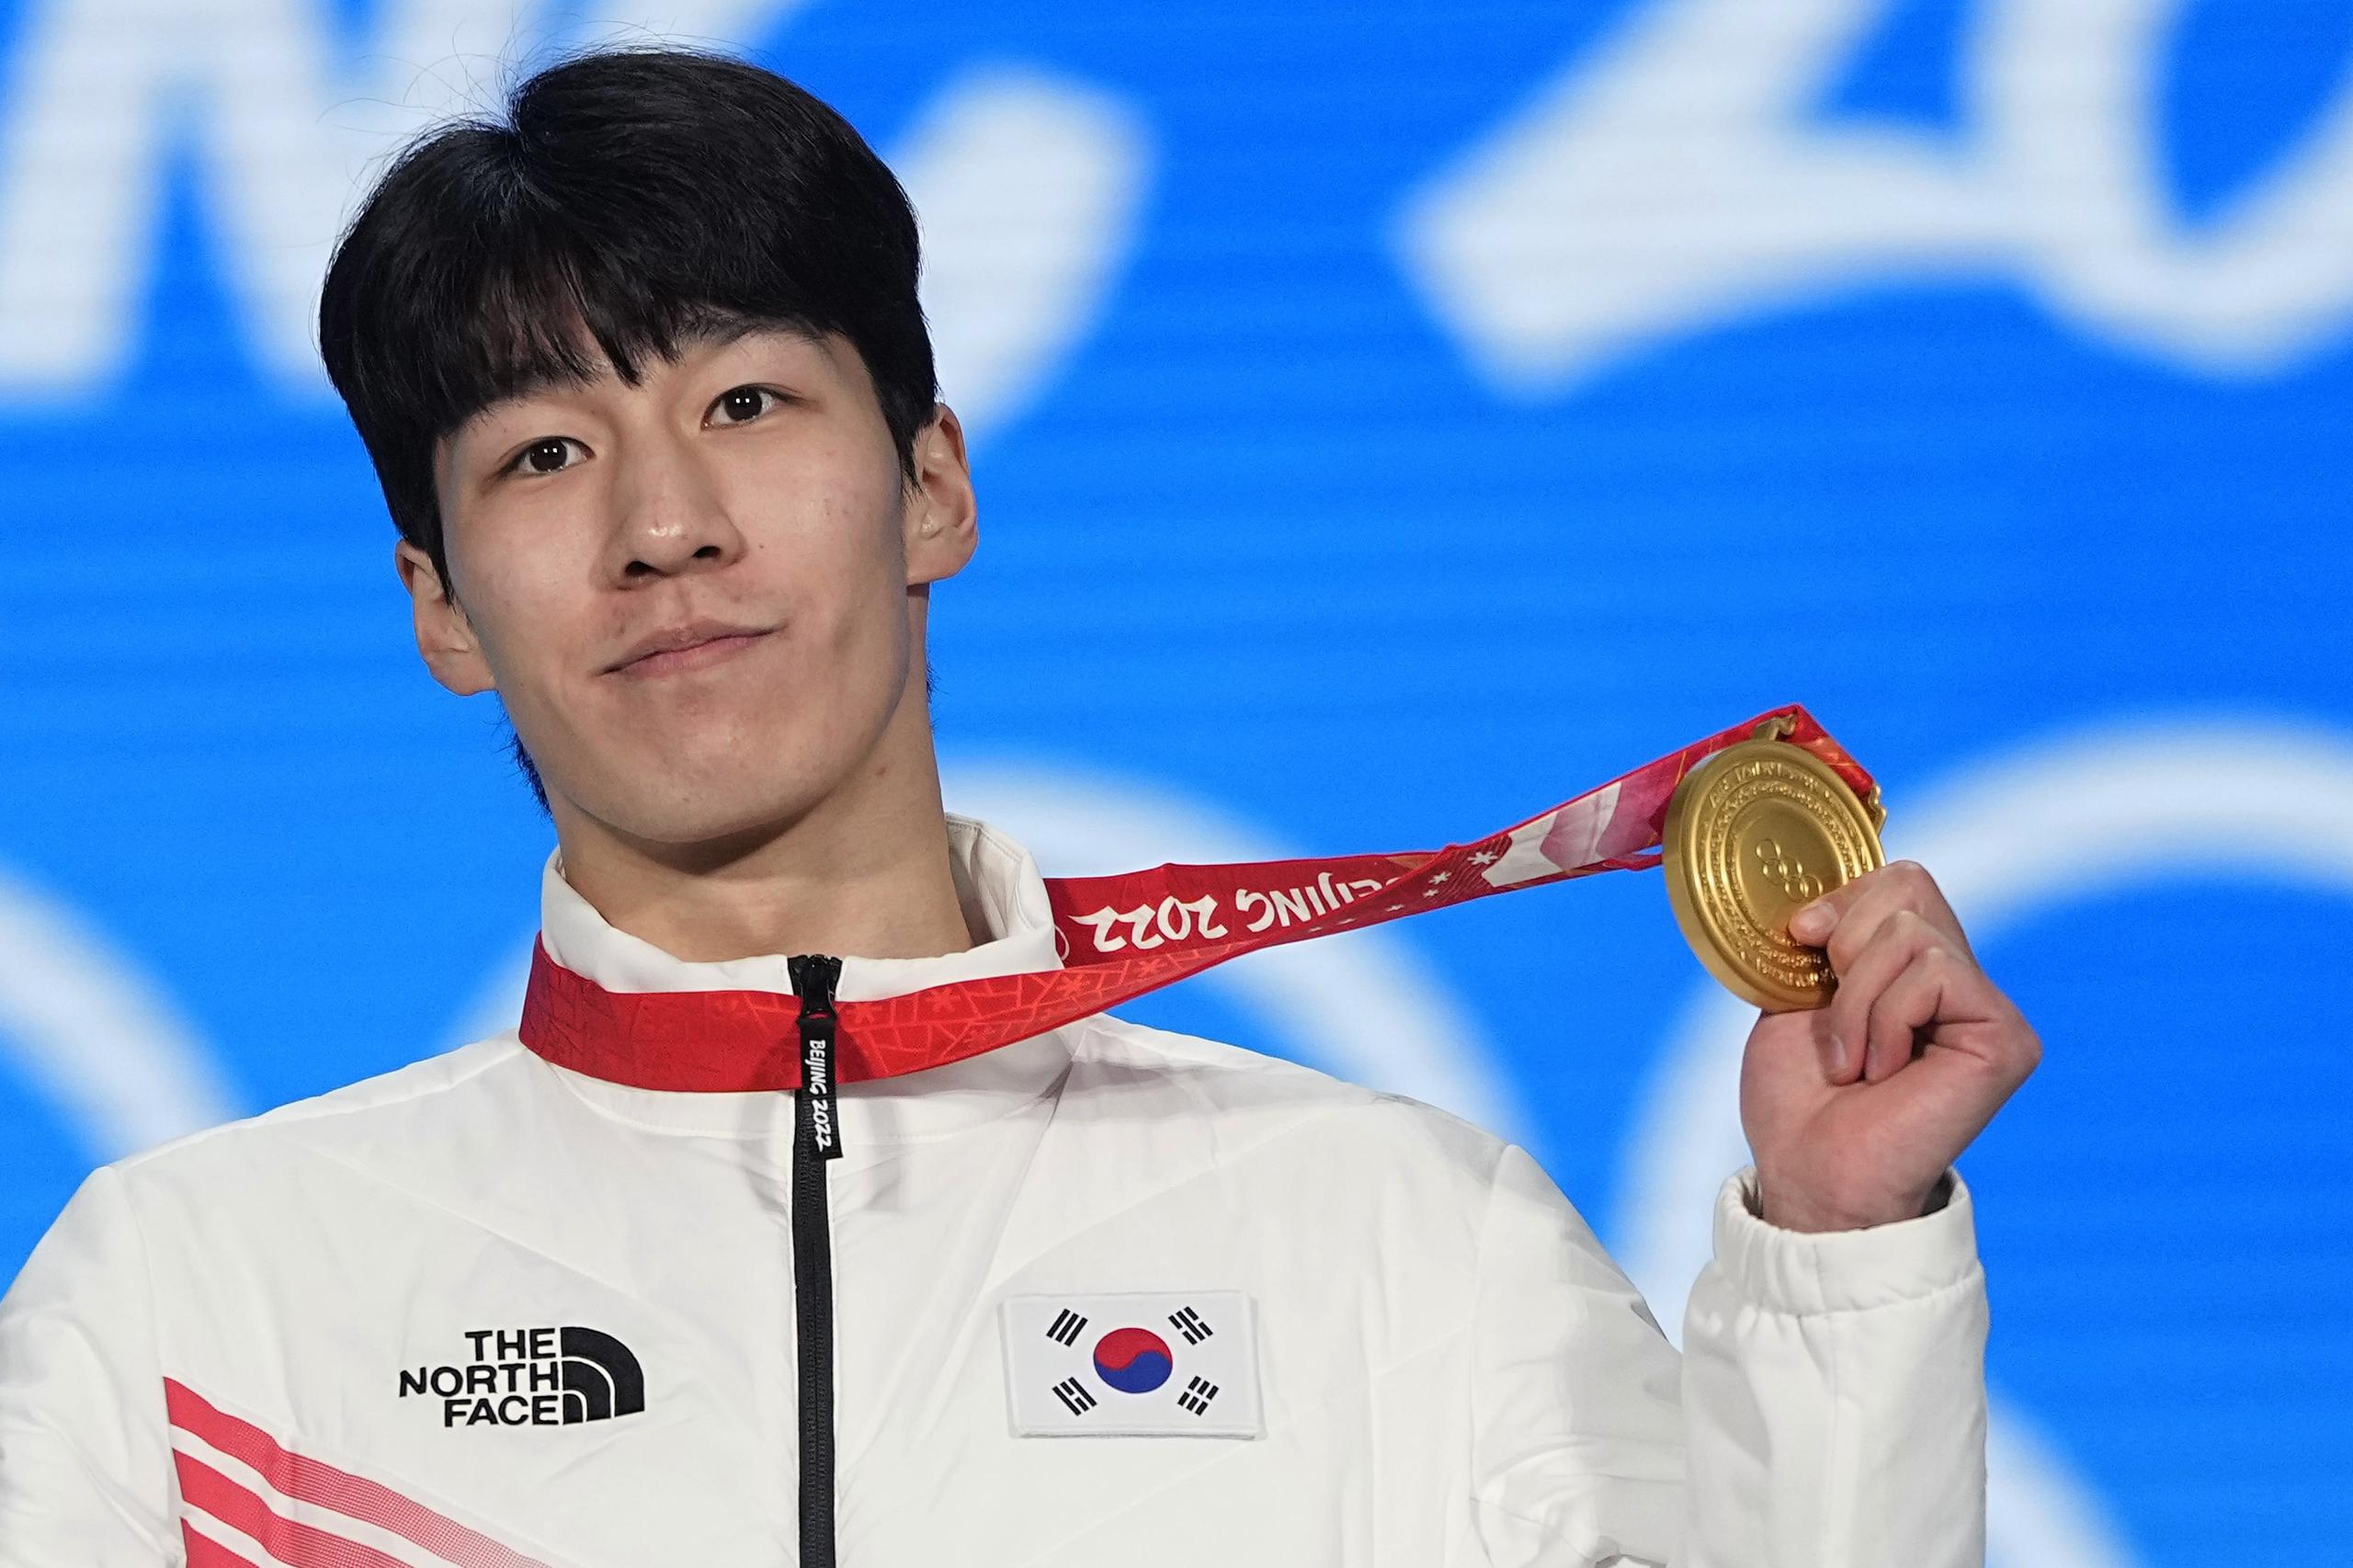 En foto del jueves 10 de febrero del 2022, el medallista de oro Hwang Dae-heon de Corea del Sur celebra tras ganar su medalla de oro en los 1.500 metros de patinaje de velocidad en los Juegos Olímpicos de Beijing. (AP Foto/Jae C. Hong)